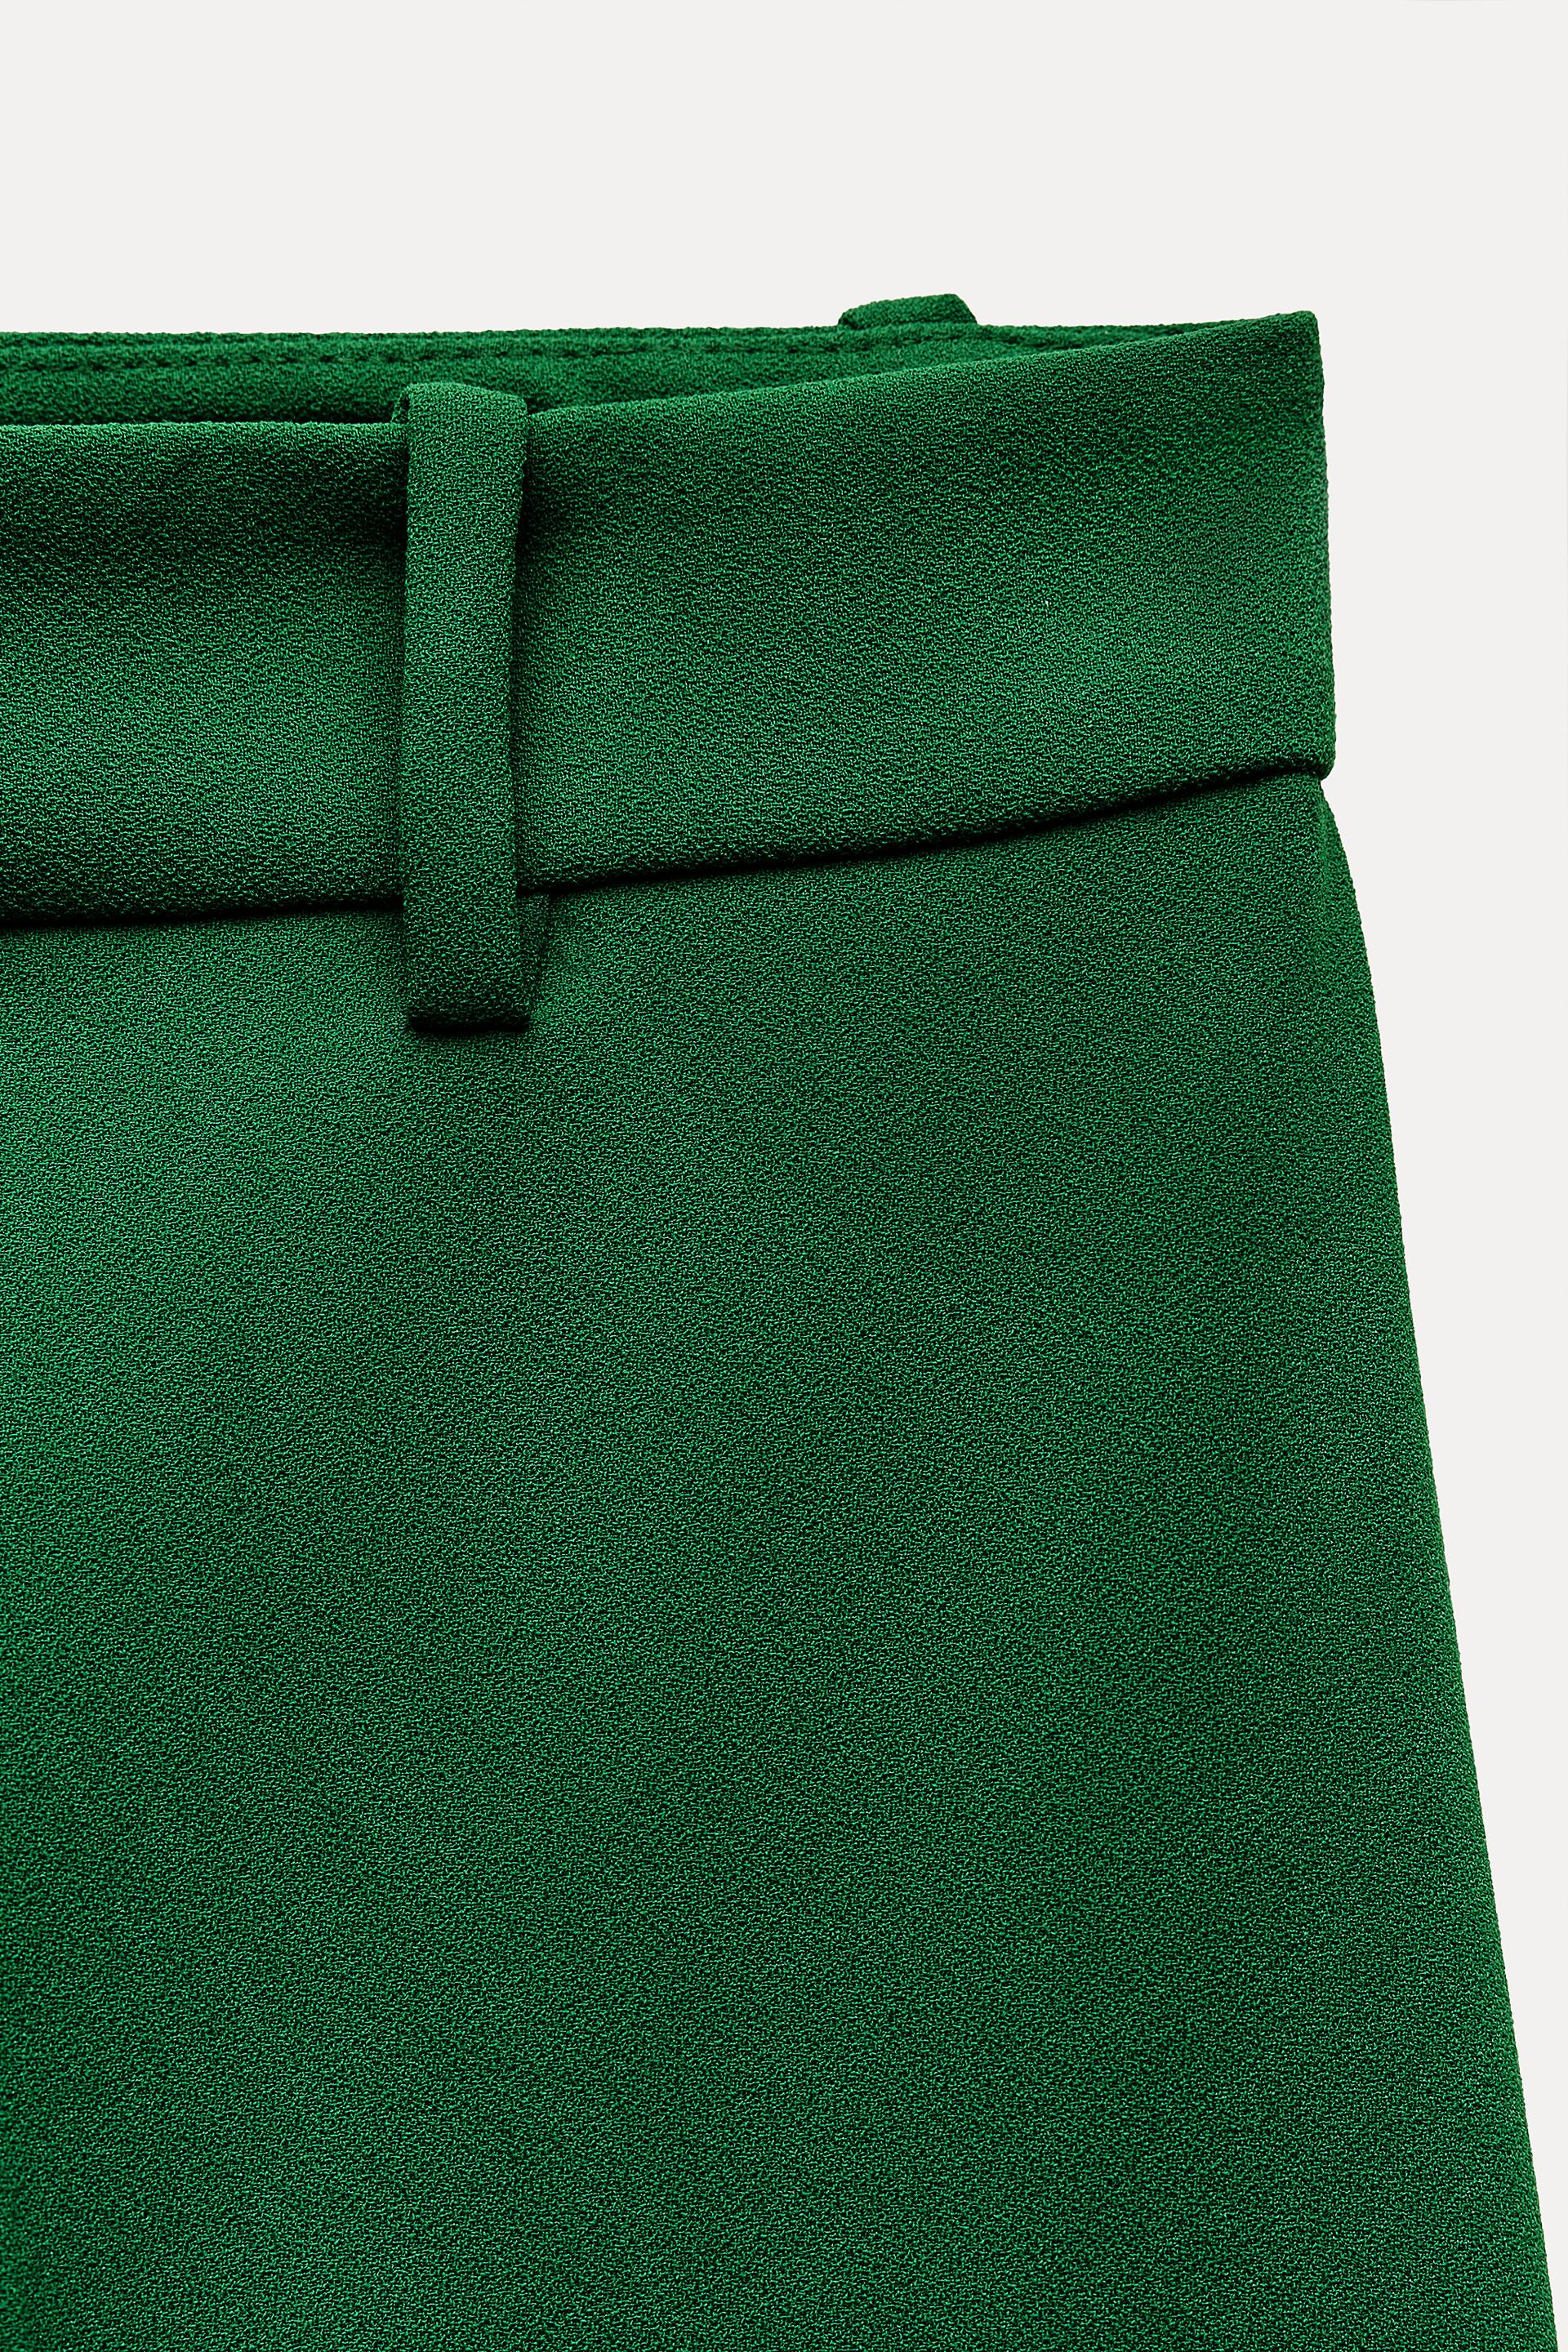 Zara Girls Green Moto Pants with Zipper Pockets - Size 13/14 28 Waist